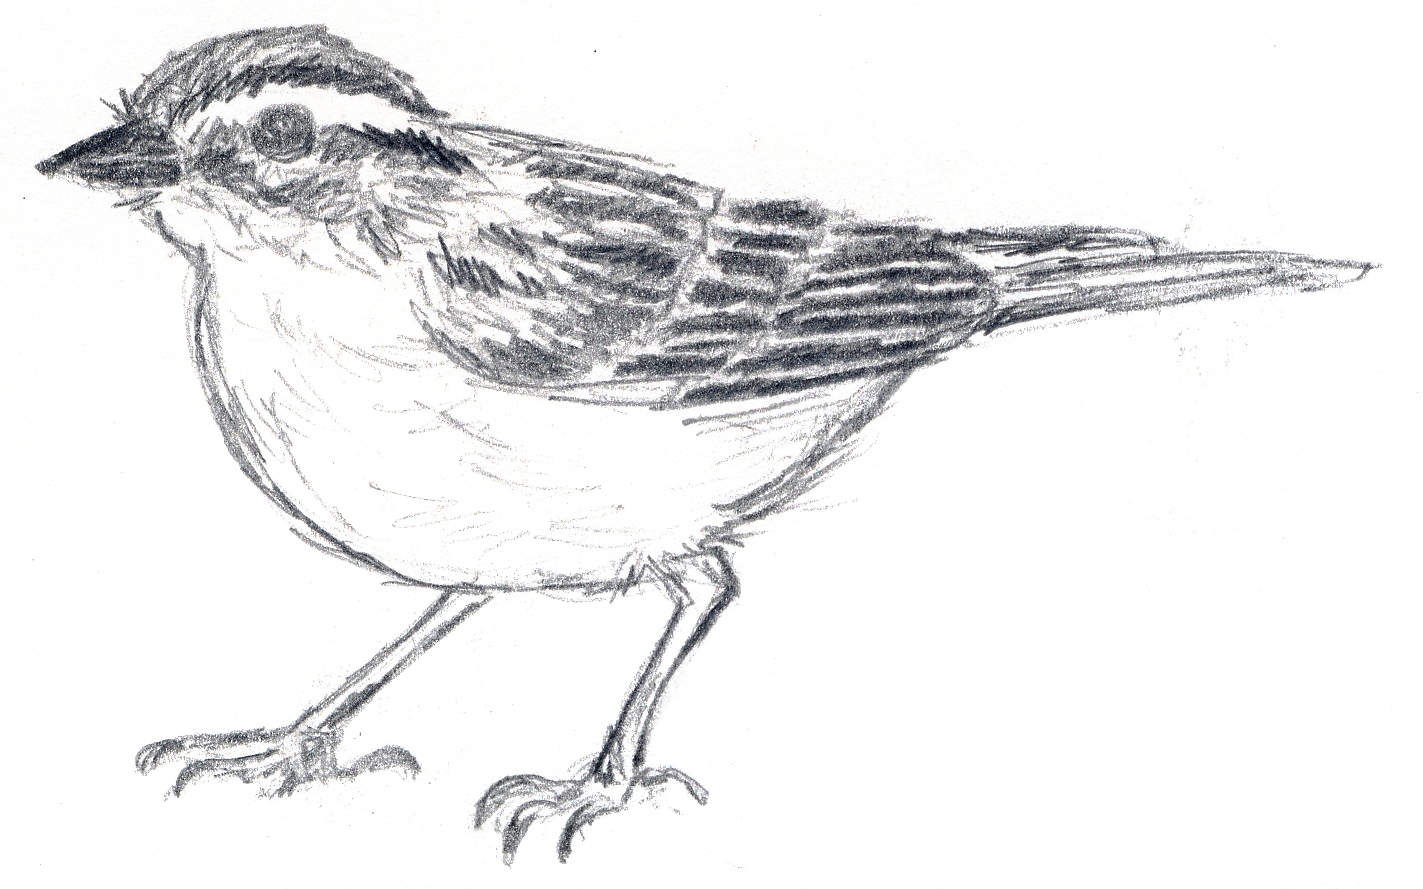 Sparrow sketch by Judith Monroe